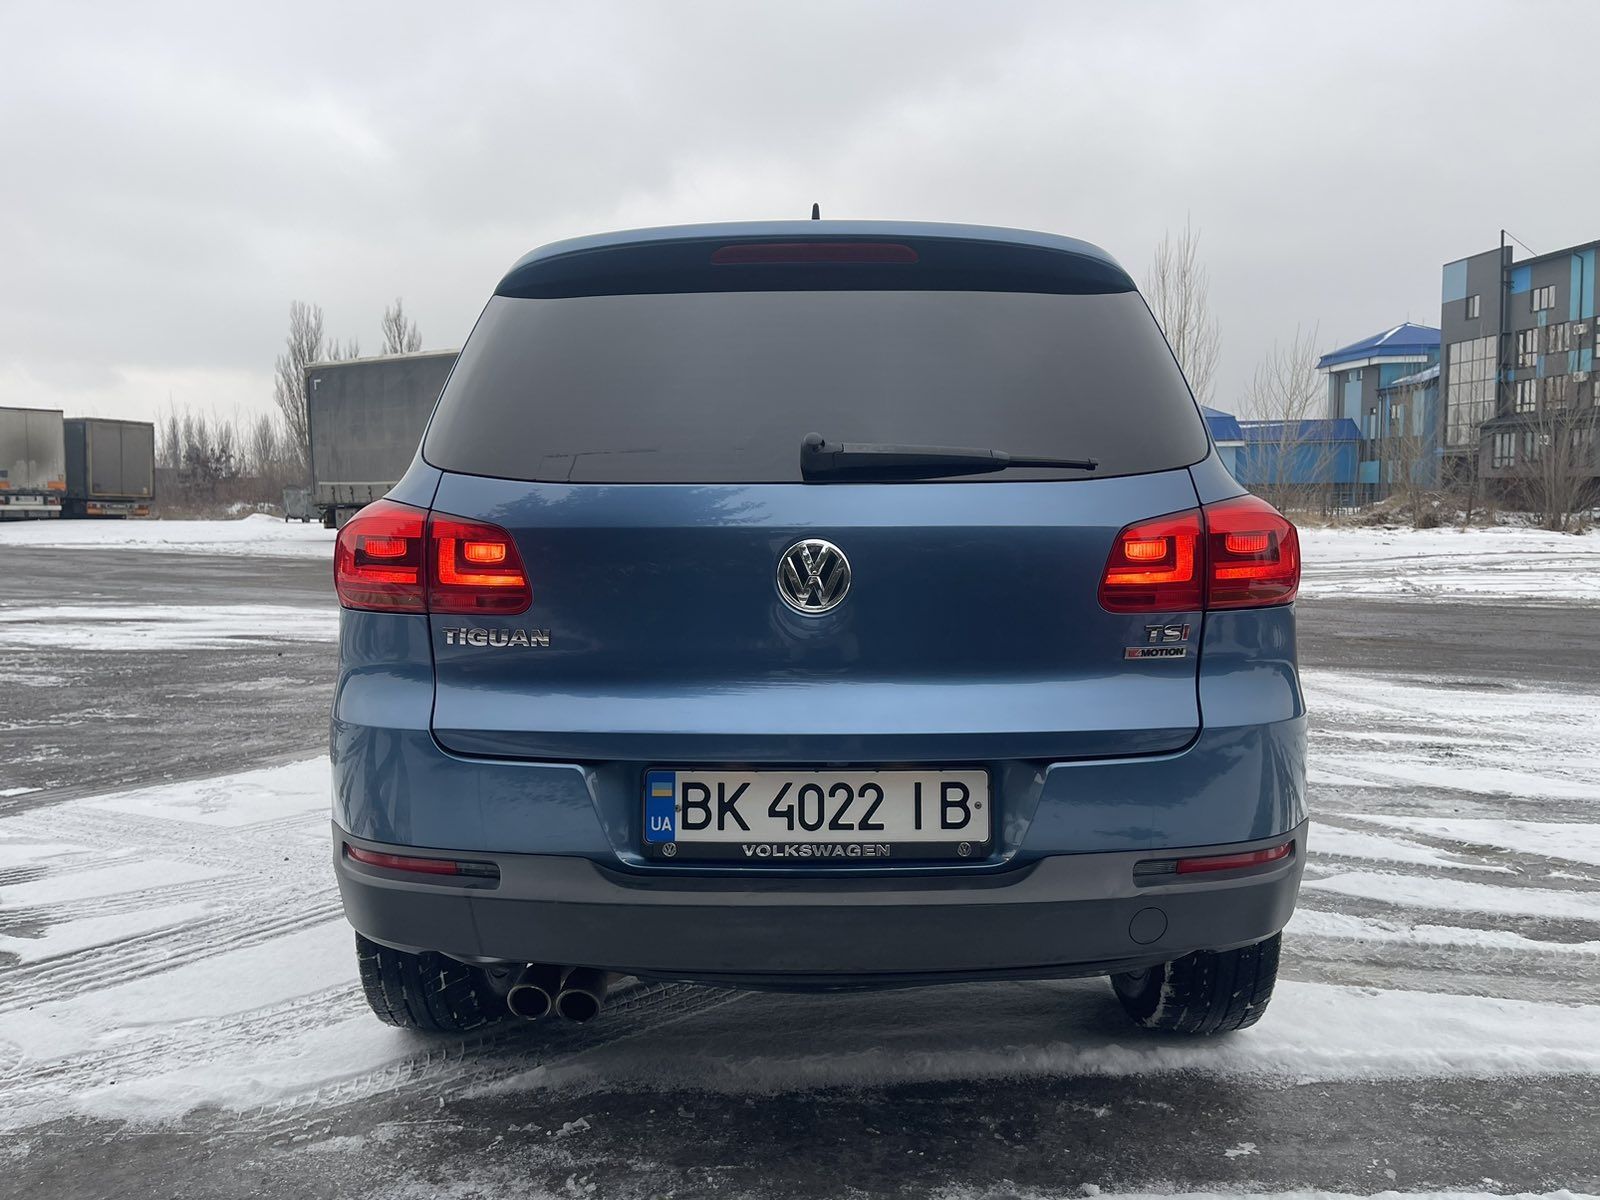 Продам Volkswagen Tiguan 2016 Wolfsburg edition